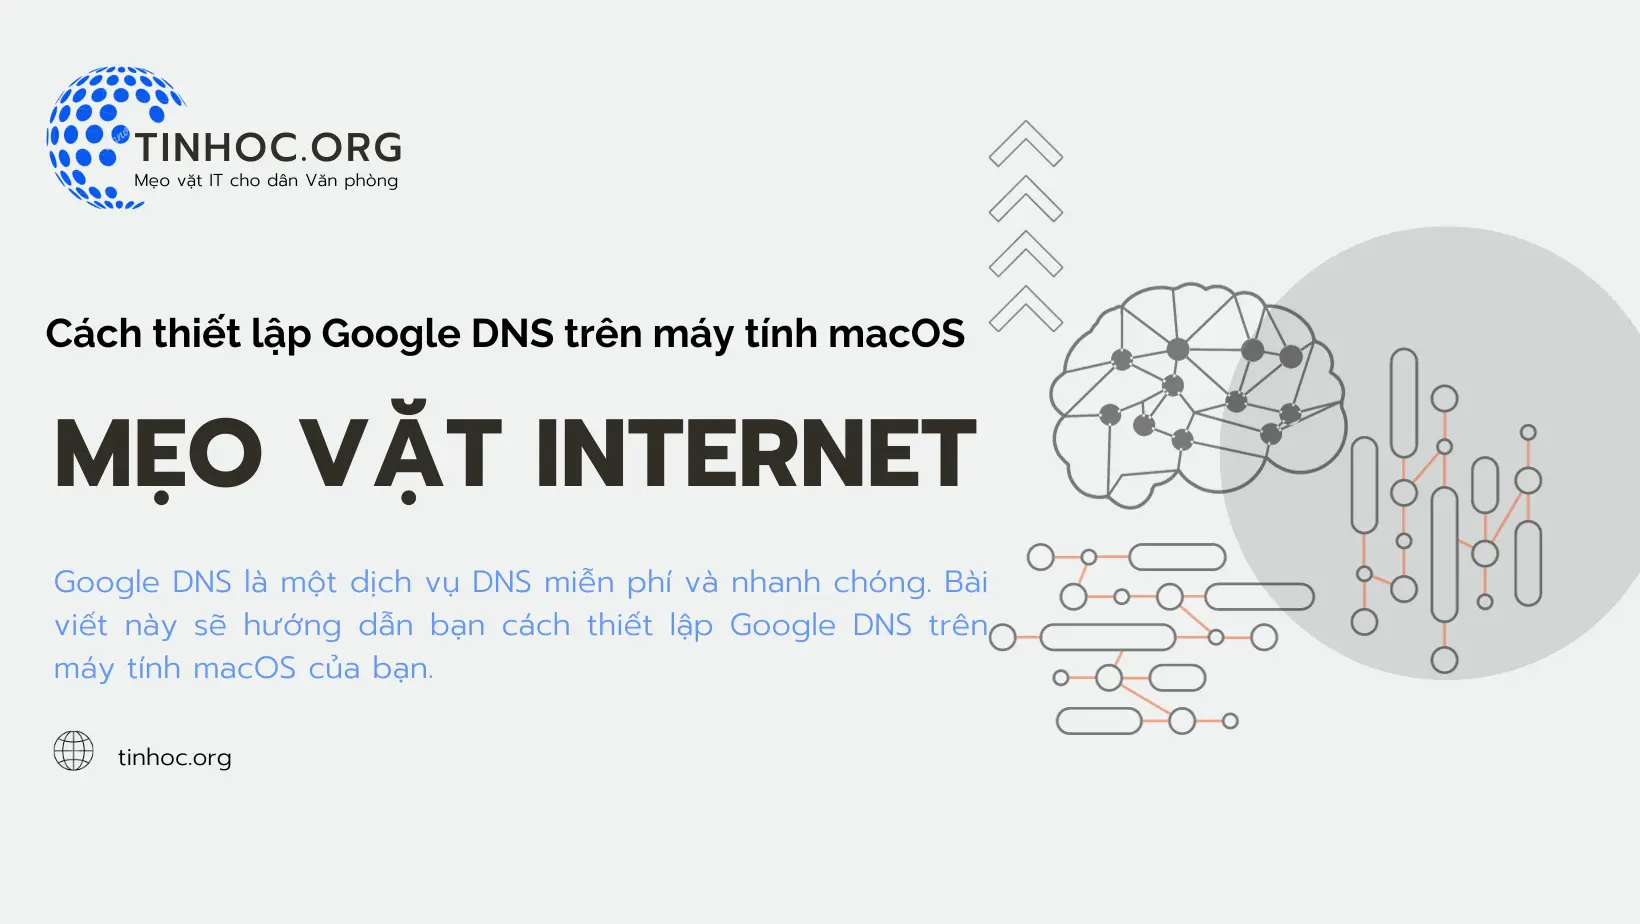 Cách thiết lập Google DNS trên máy tính macOS